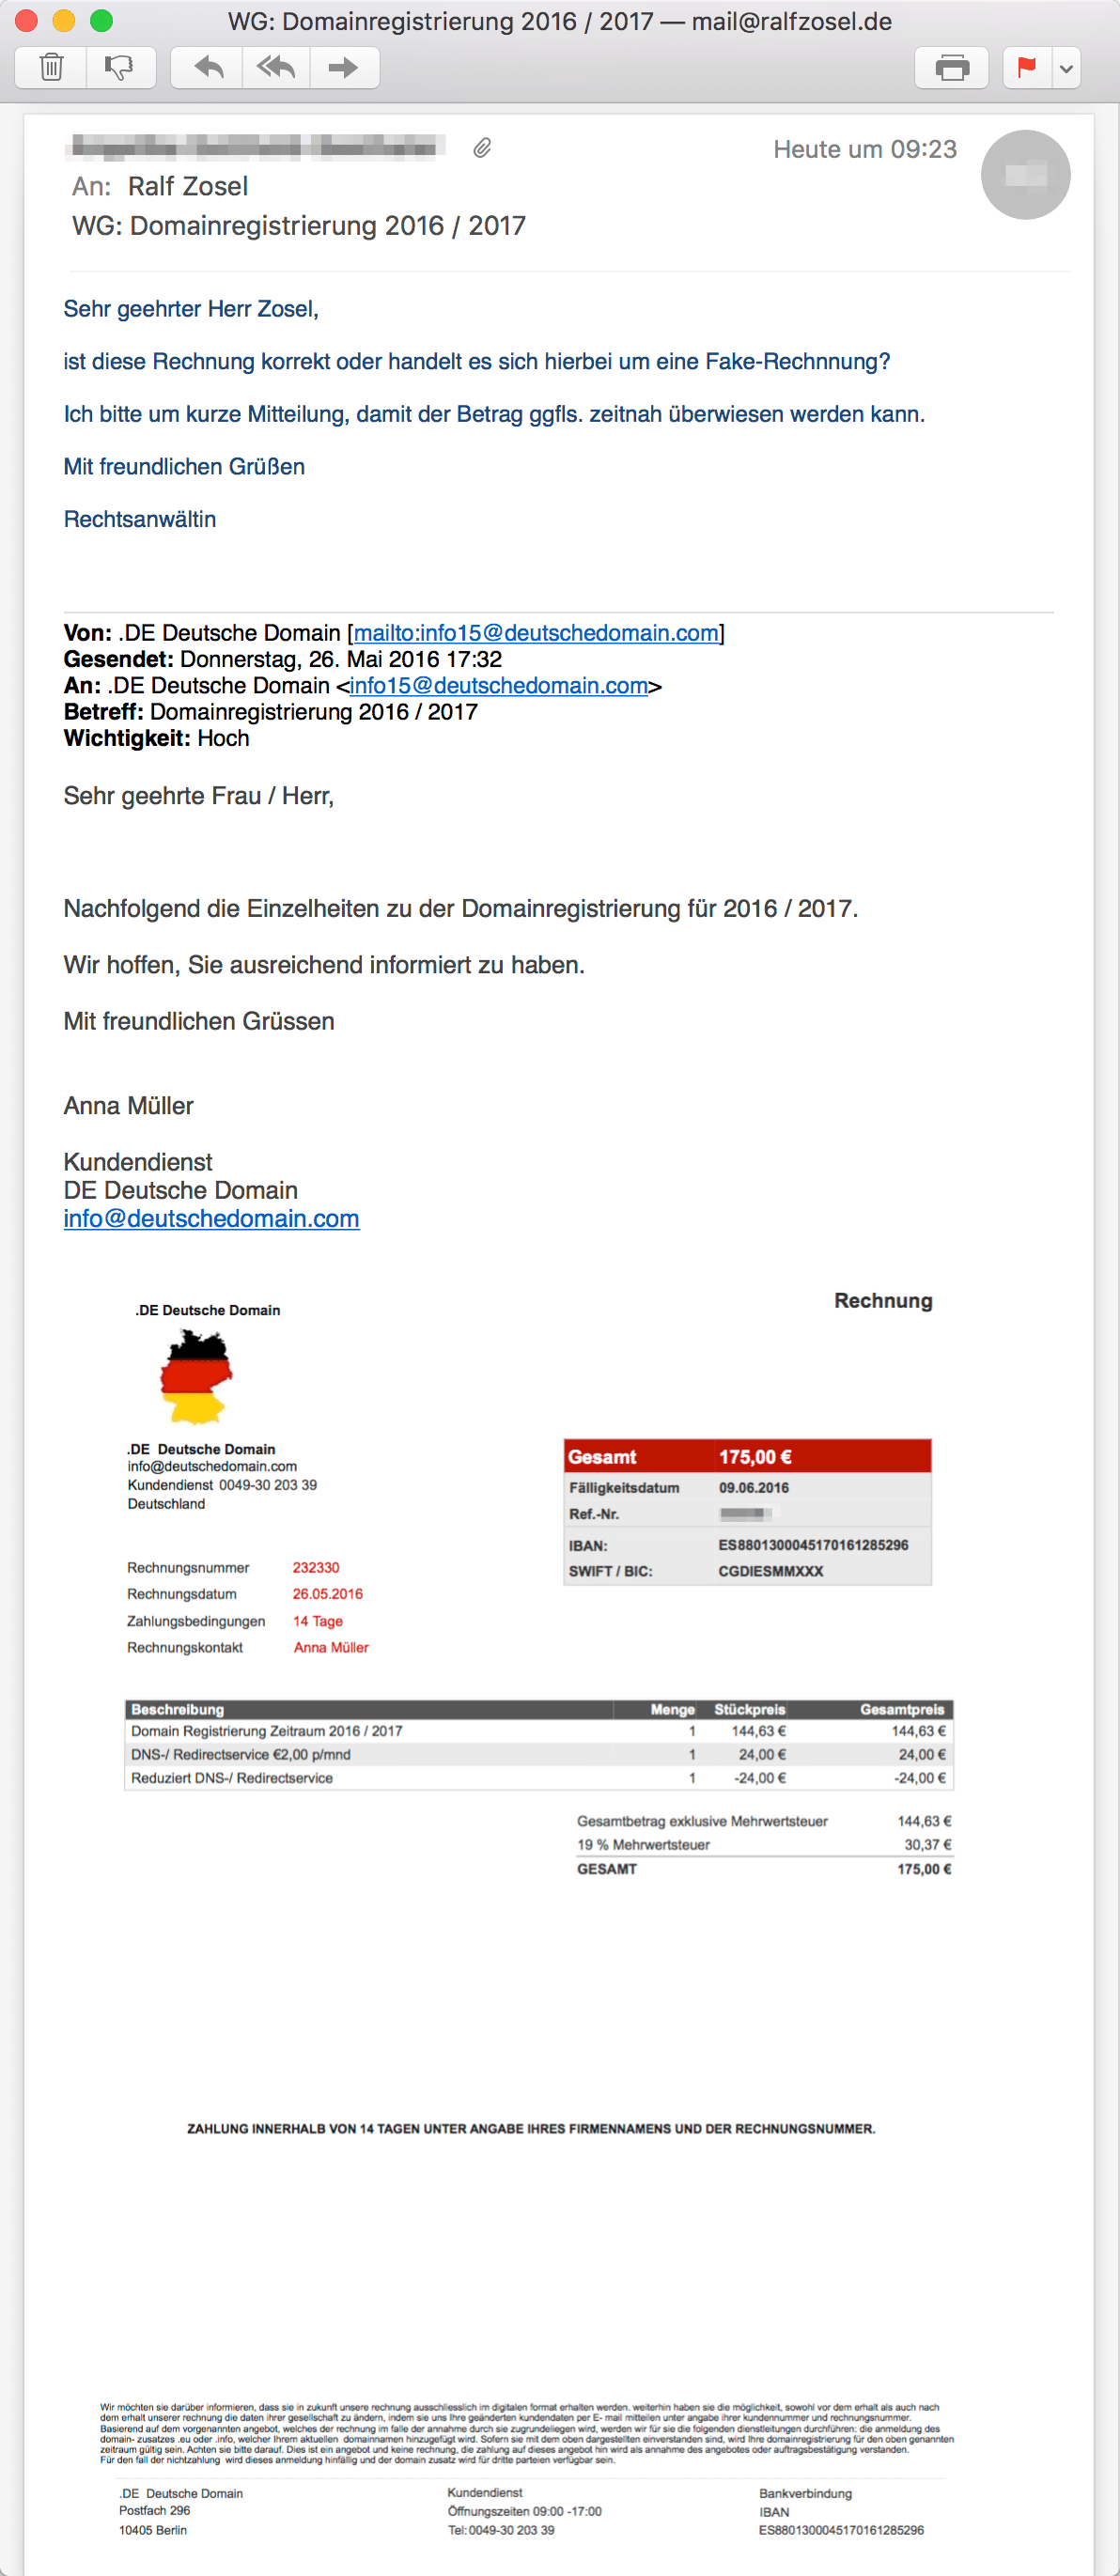 E-Mail von RAin wg. "Rechnung" DE Deutsche Domain